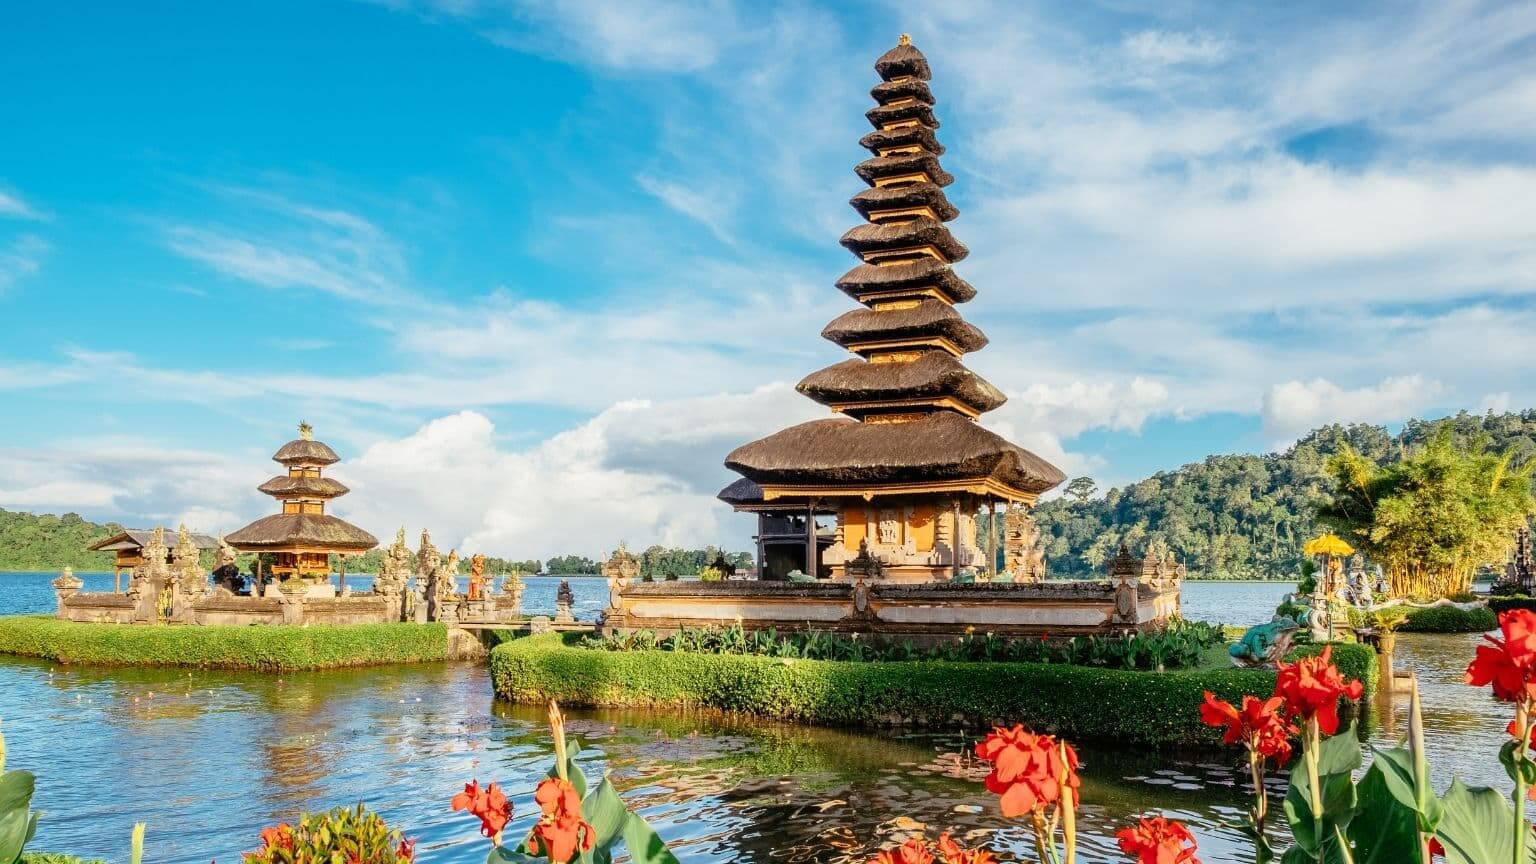 Tour du lịch Indonesia mùa Thu Bali - Đền Tanah Lot